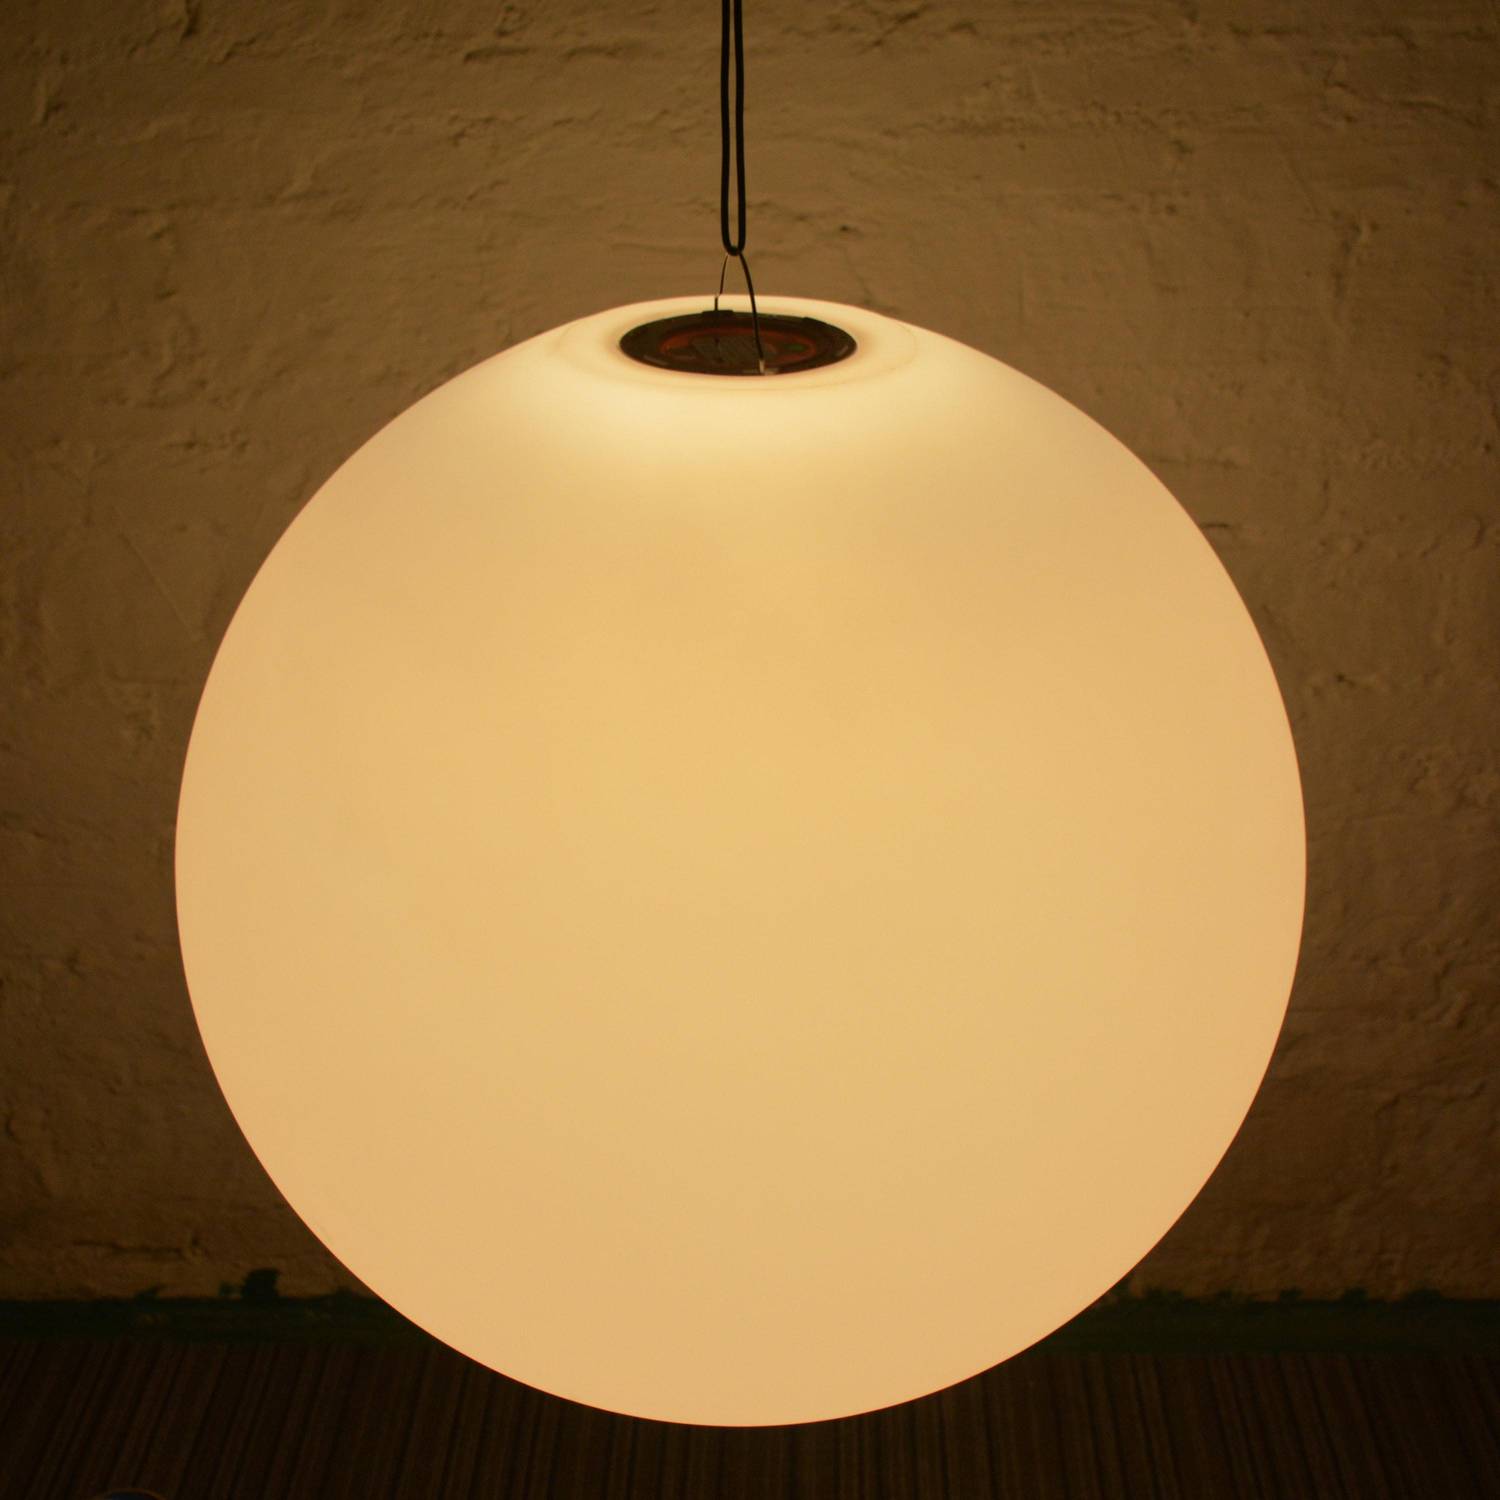 LED Bollamp 60cm, decoratieve lichtbol, Ø60cm, warm wit, afstandsbediening Photo5